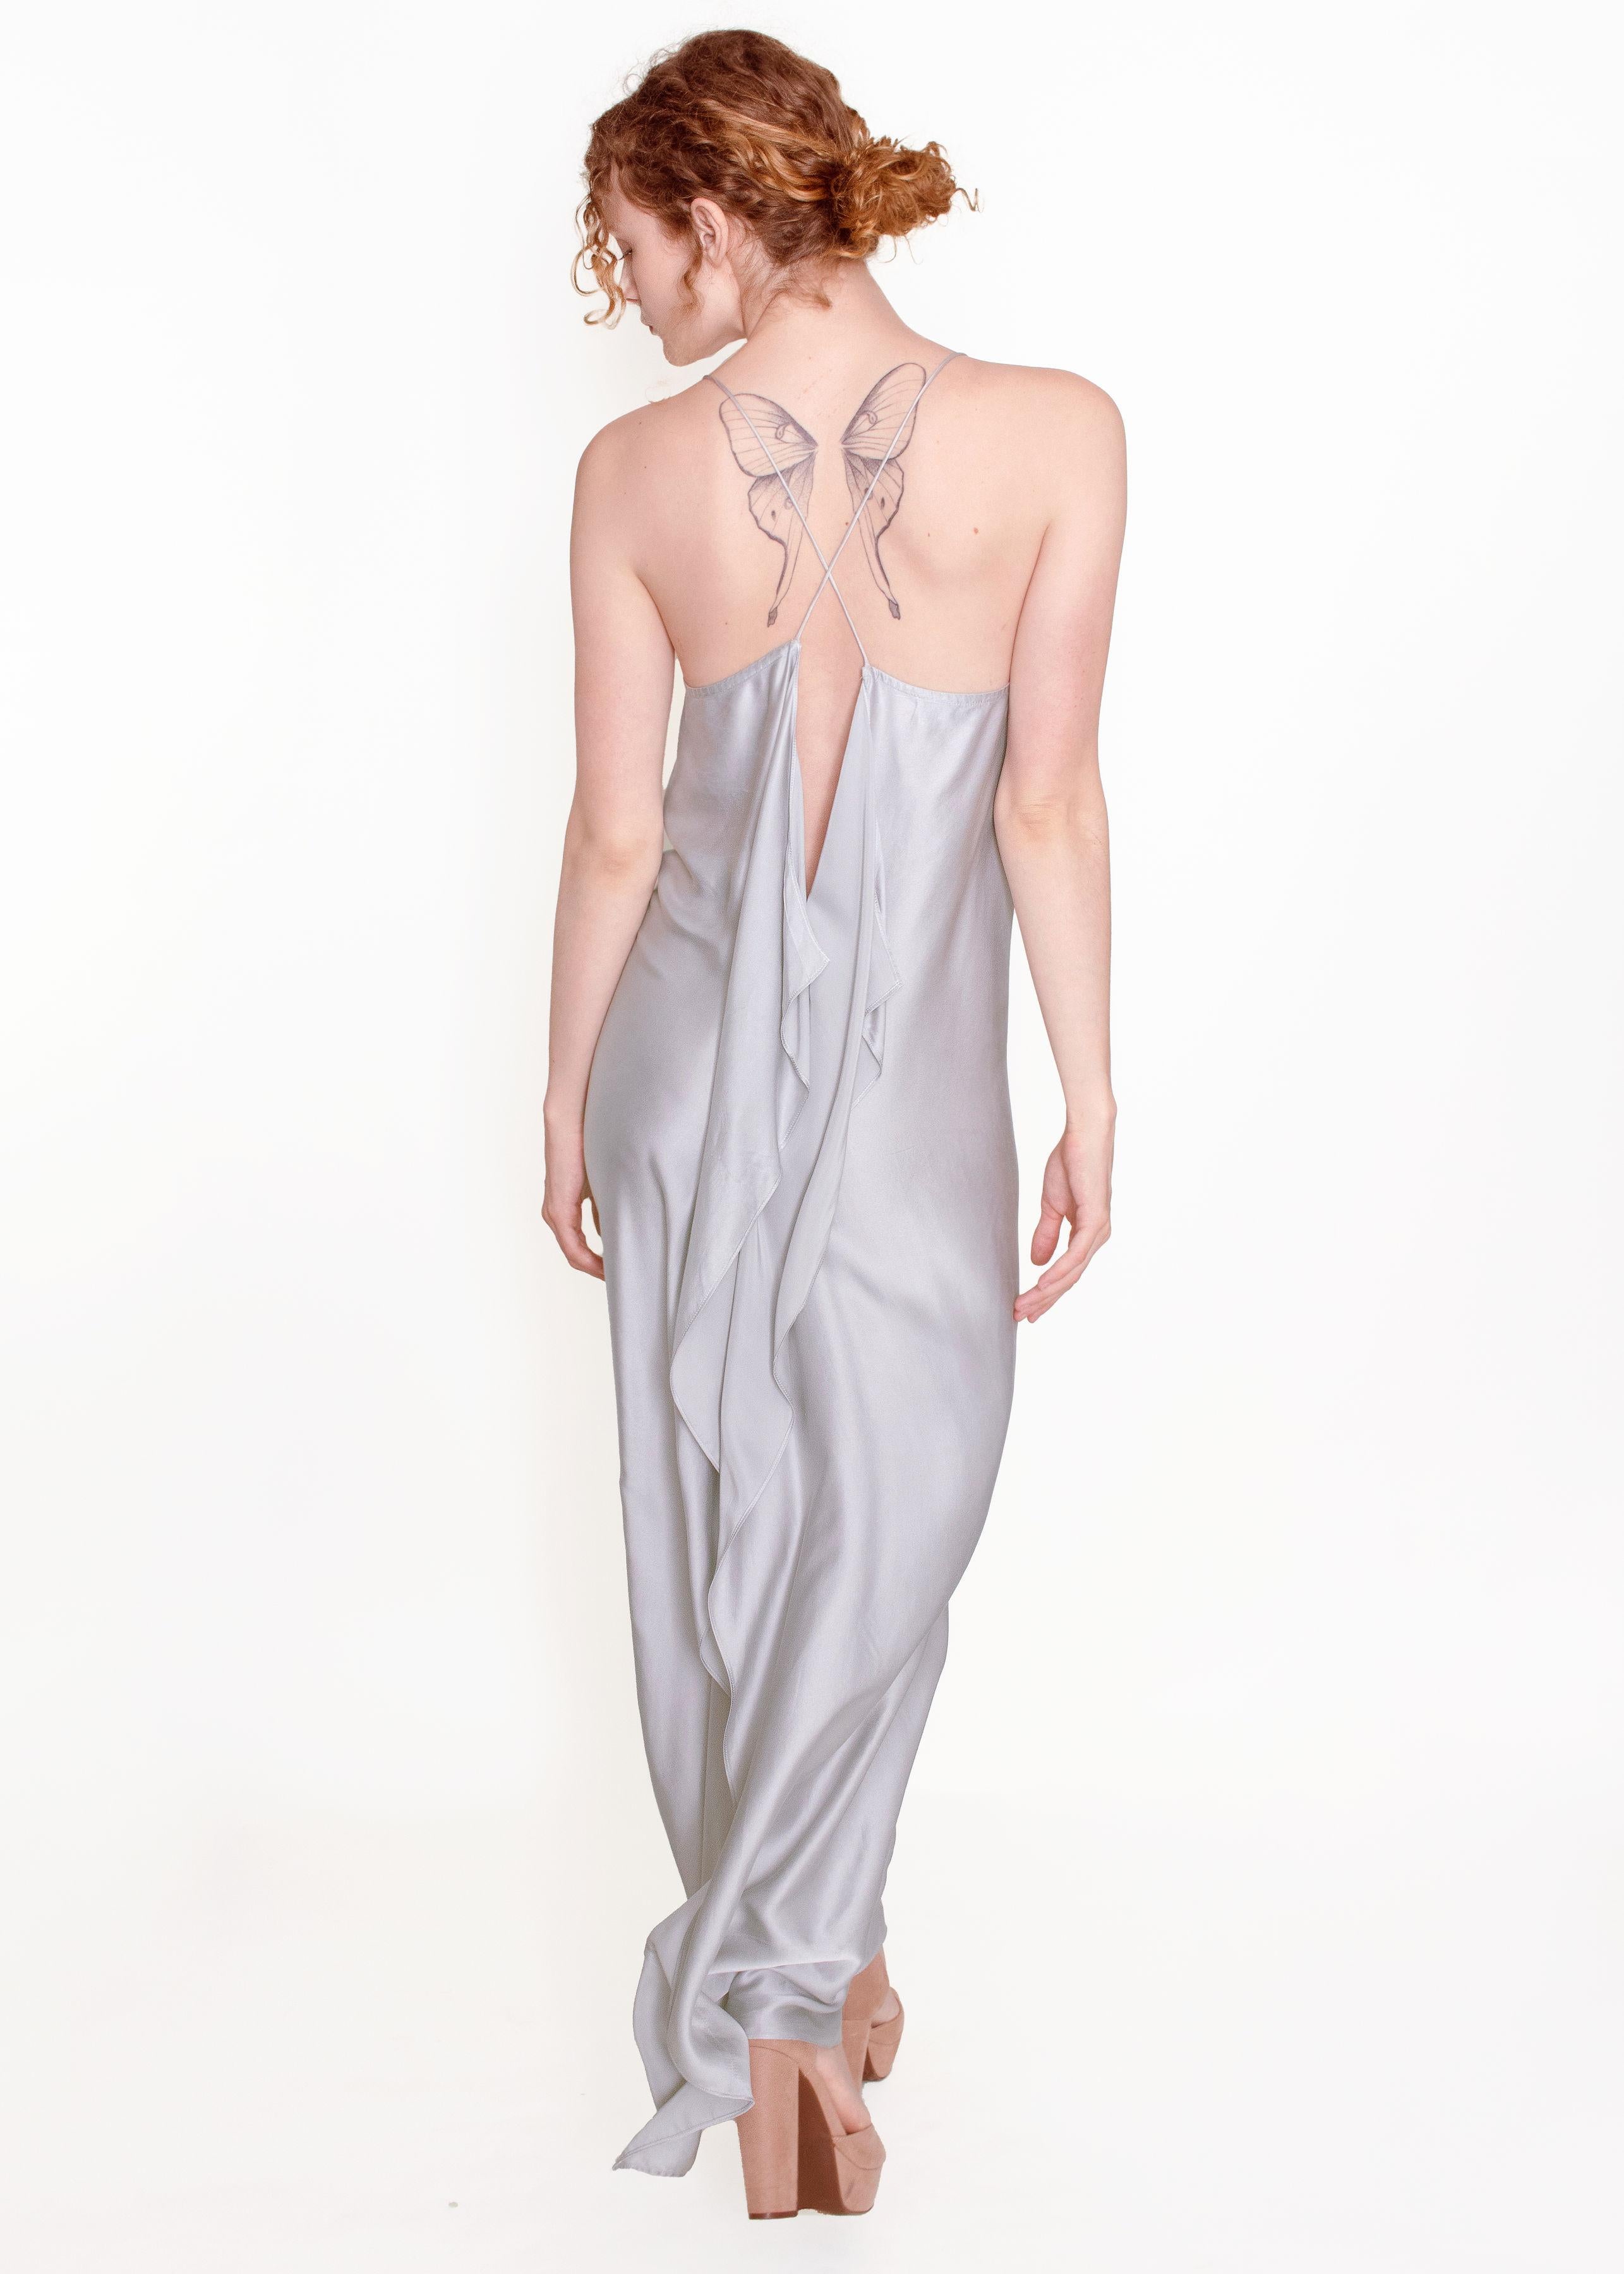 Dieses Jane Booke Silver Cross Back Silver Slip Dress ist ein atemberaubendes und einzigartiges Stück! Es ist aus 100% Seide in einer schönen silbernen Farbe mit einem sehr hohen Schlitz am Rücken, der an der richtigen Stelle einschneidet.  Der